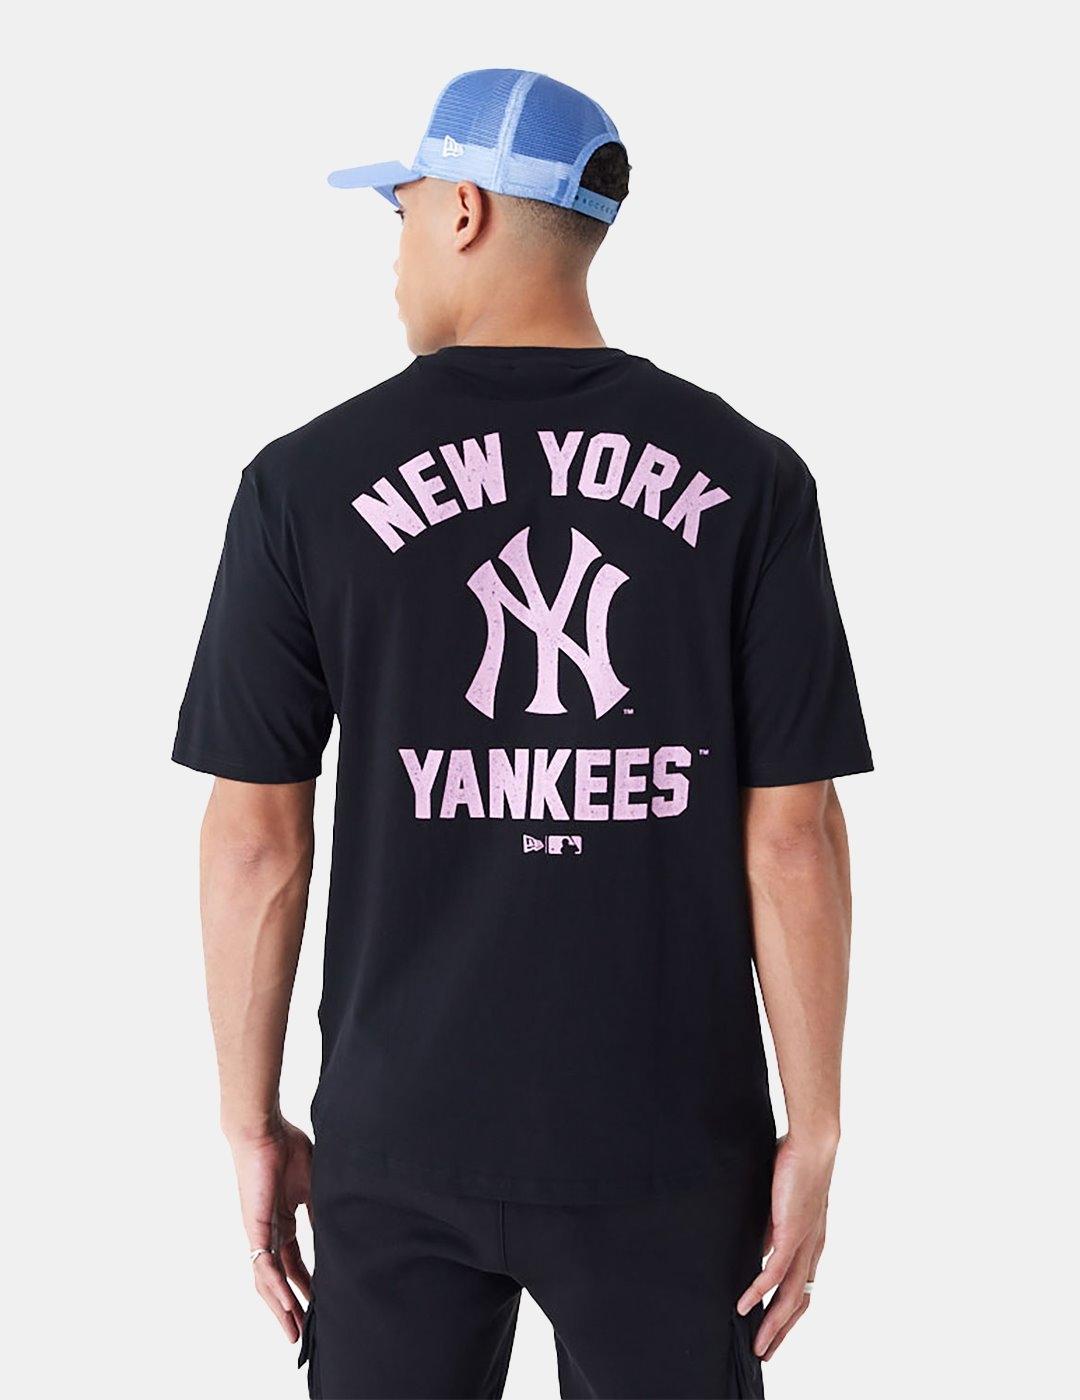 Camiseta New Era Mlb Yankees Wordmark Negro